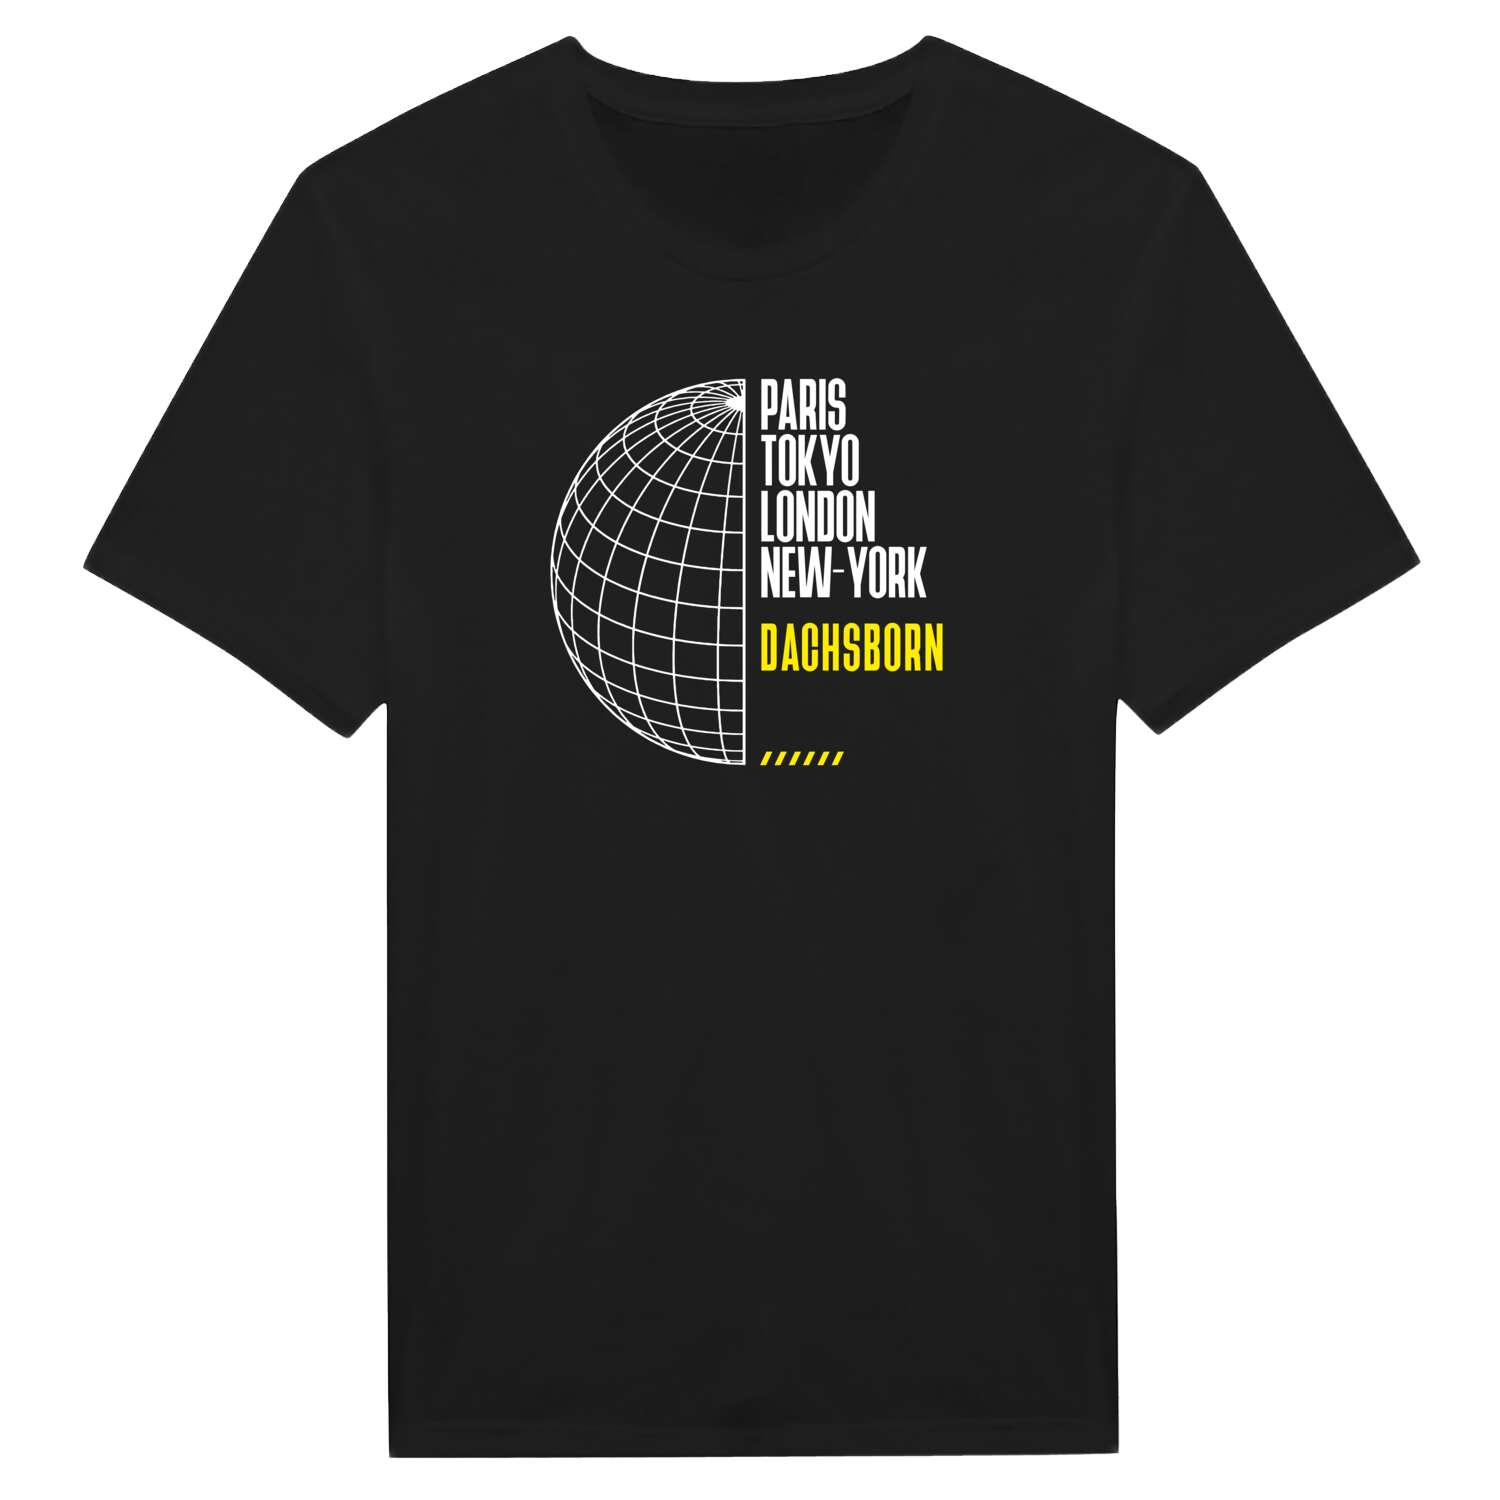 Dachsborn T-Shirt »Paris Tokyo London«